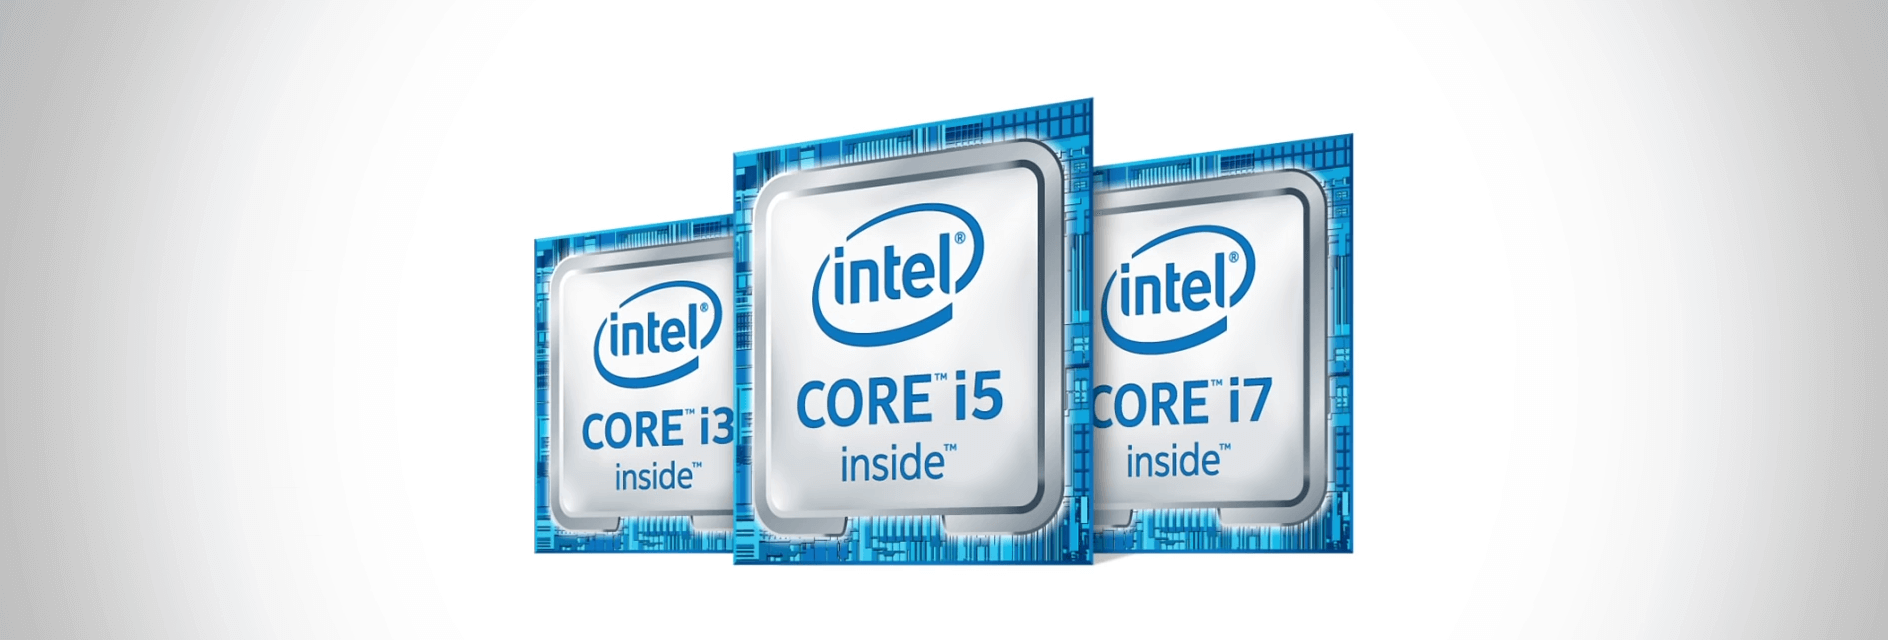 intel core i3,i5,i7